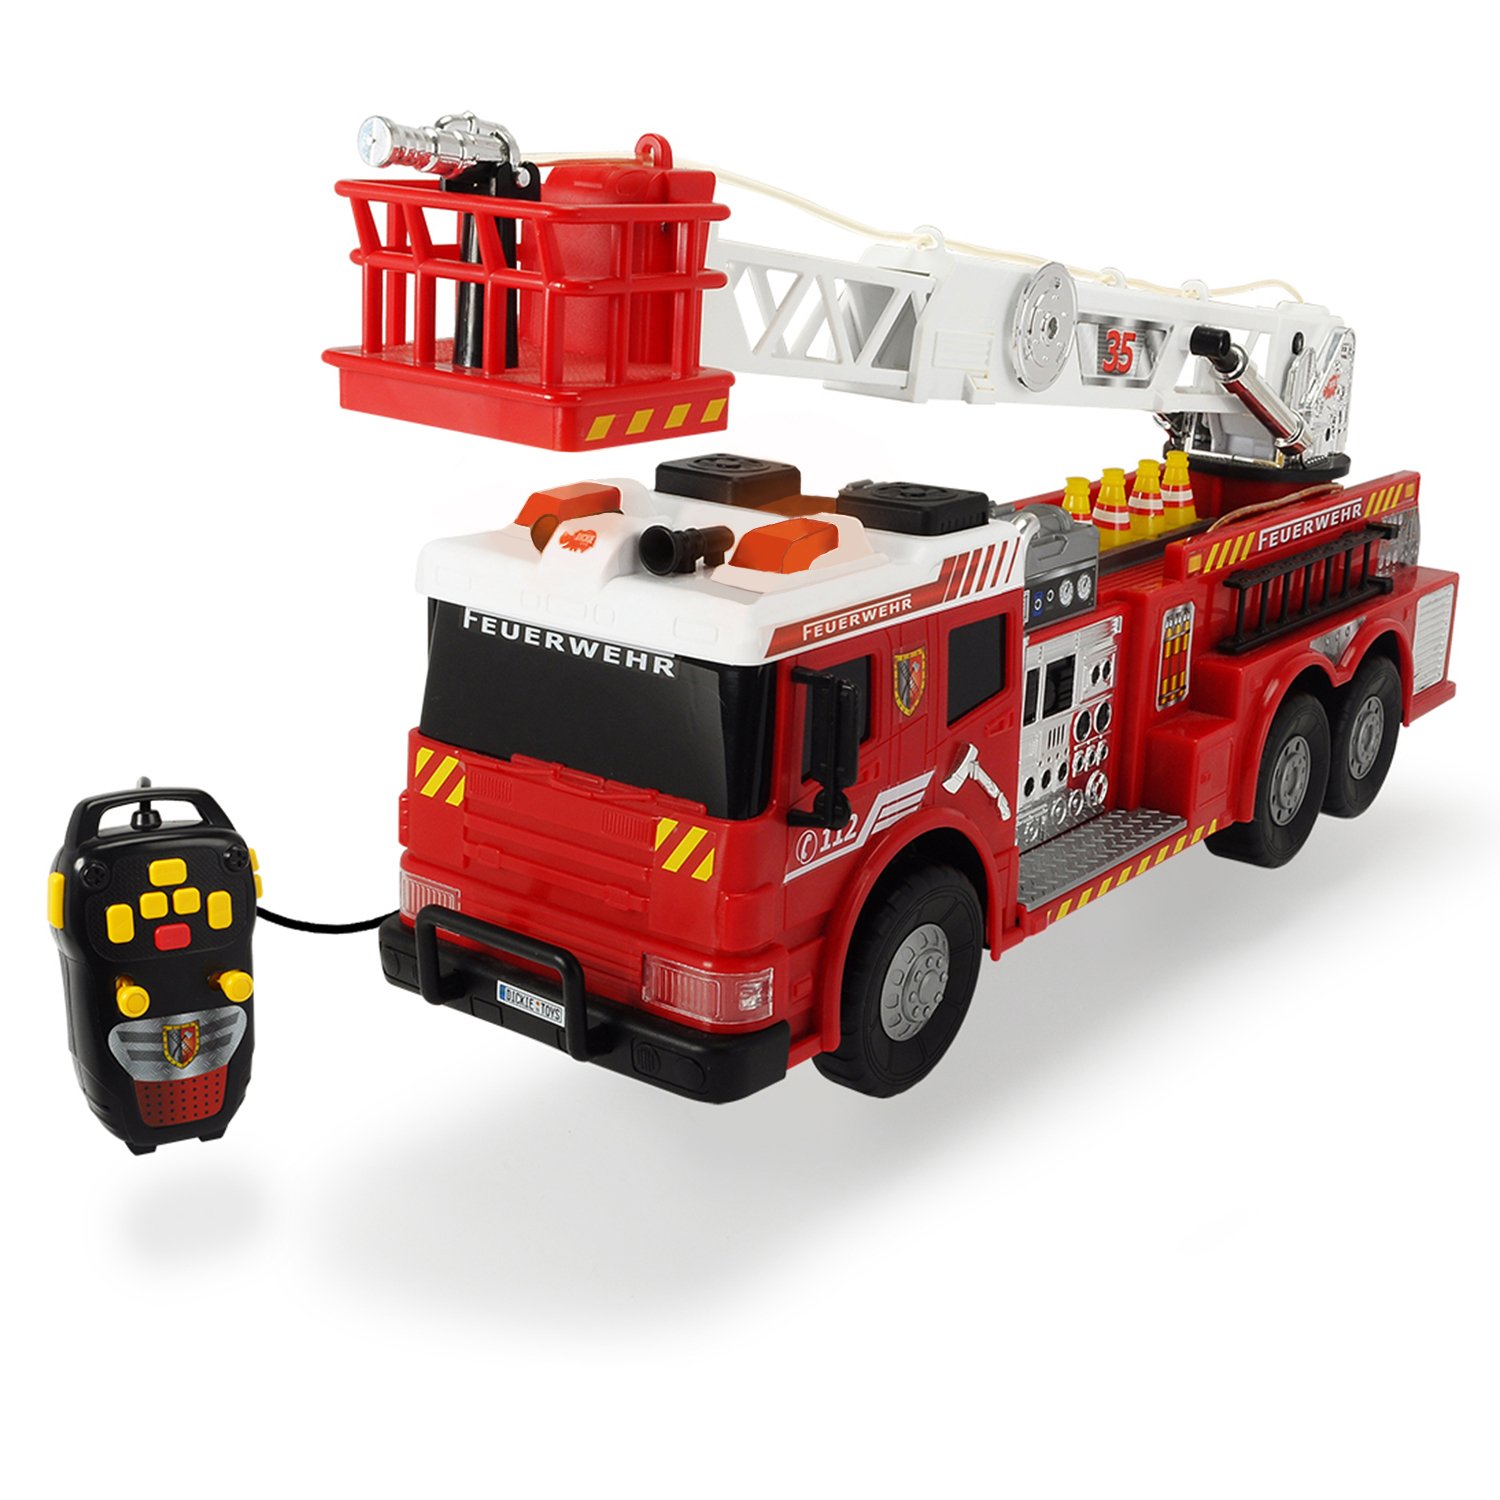 Купить игрушку пожарный. Пожарный автомобиль Dickie Toys 3719000 50 см. Dickie Toys 3719014. Пожарная машина игрушка Dickie. Dickie Toys Fire Rescue.